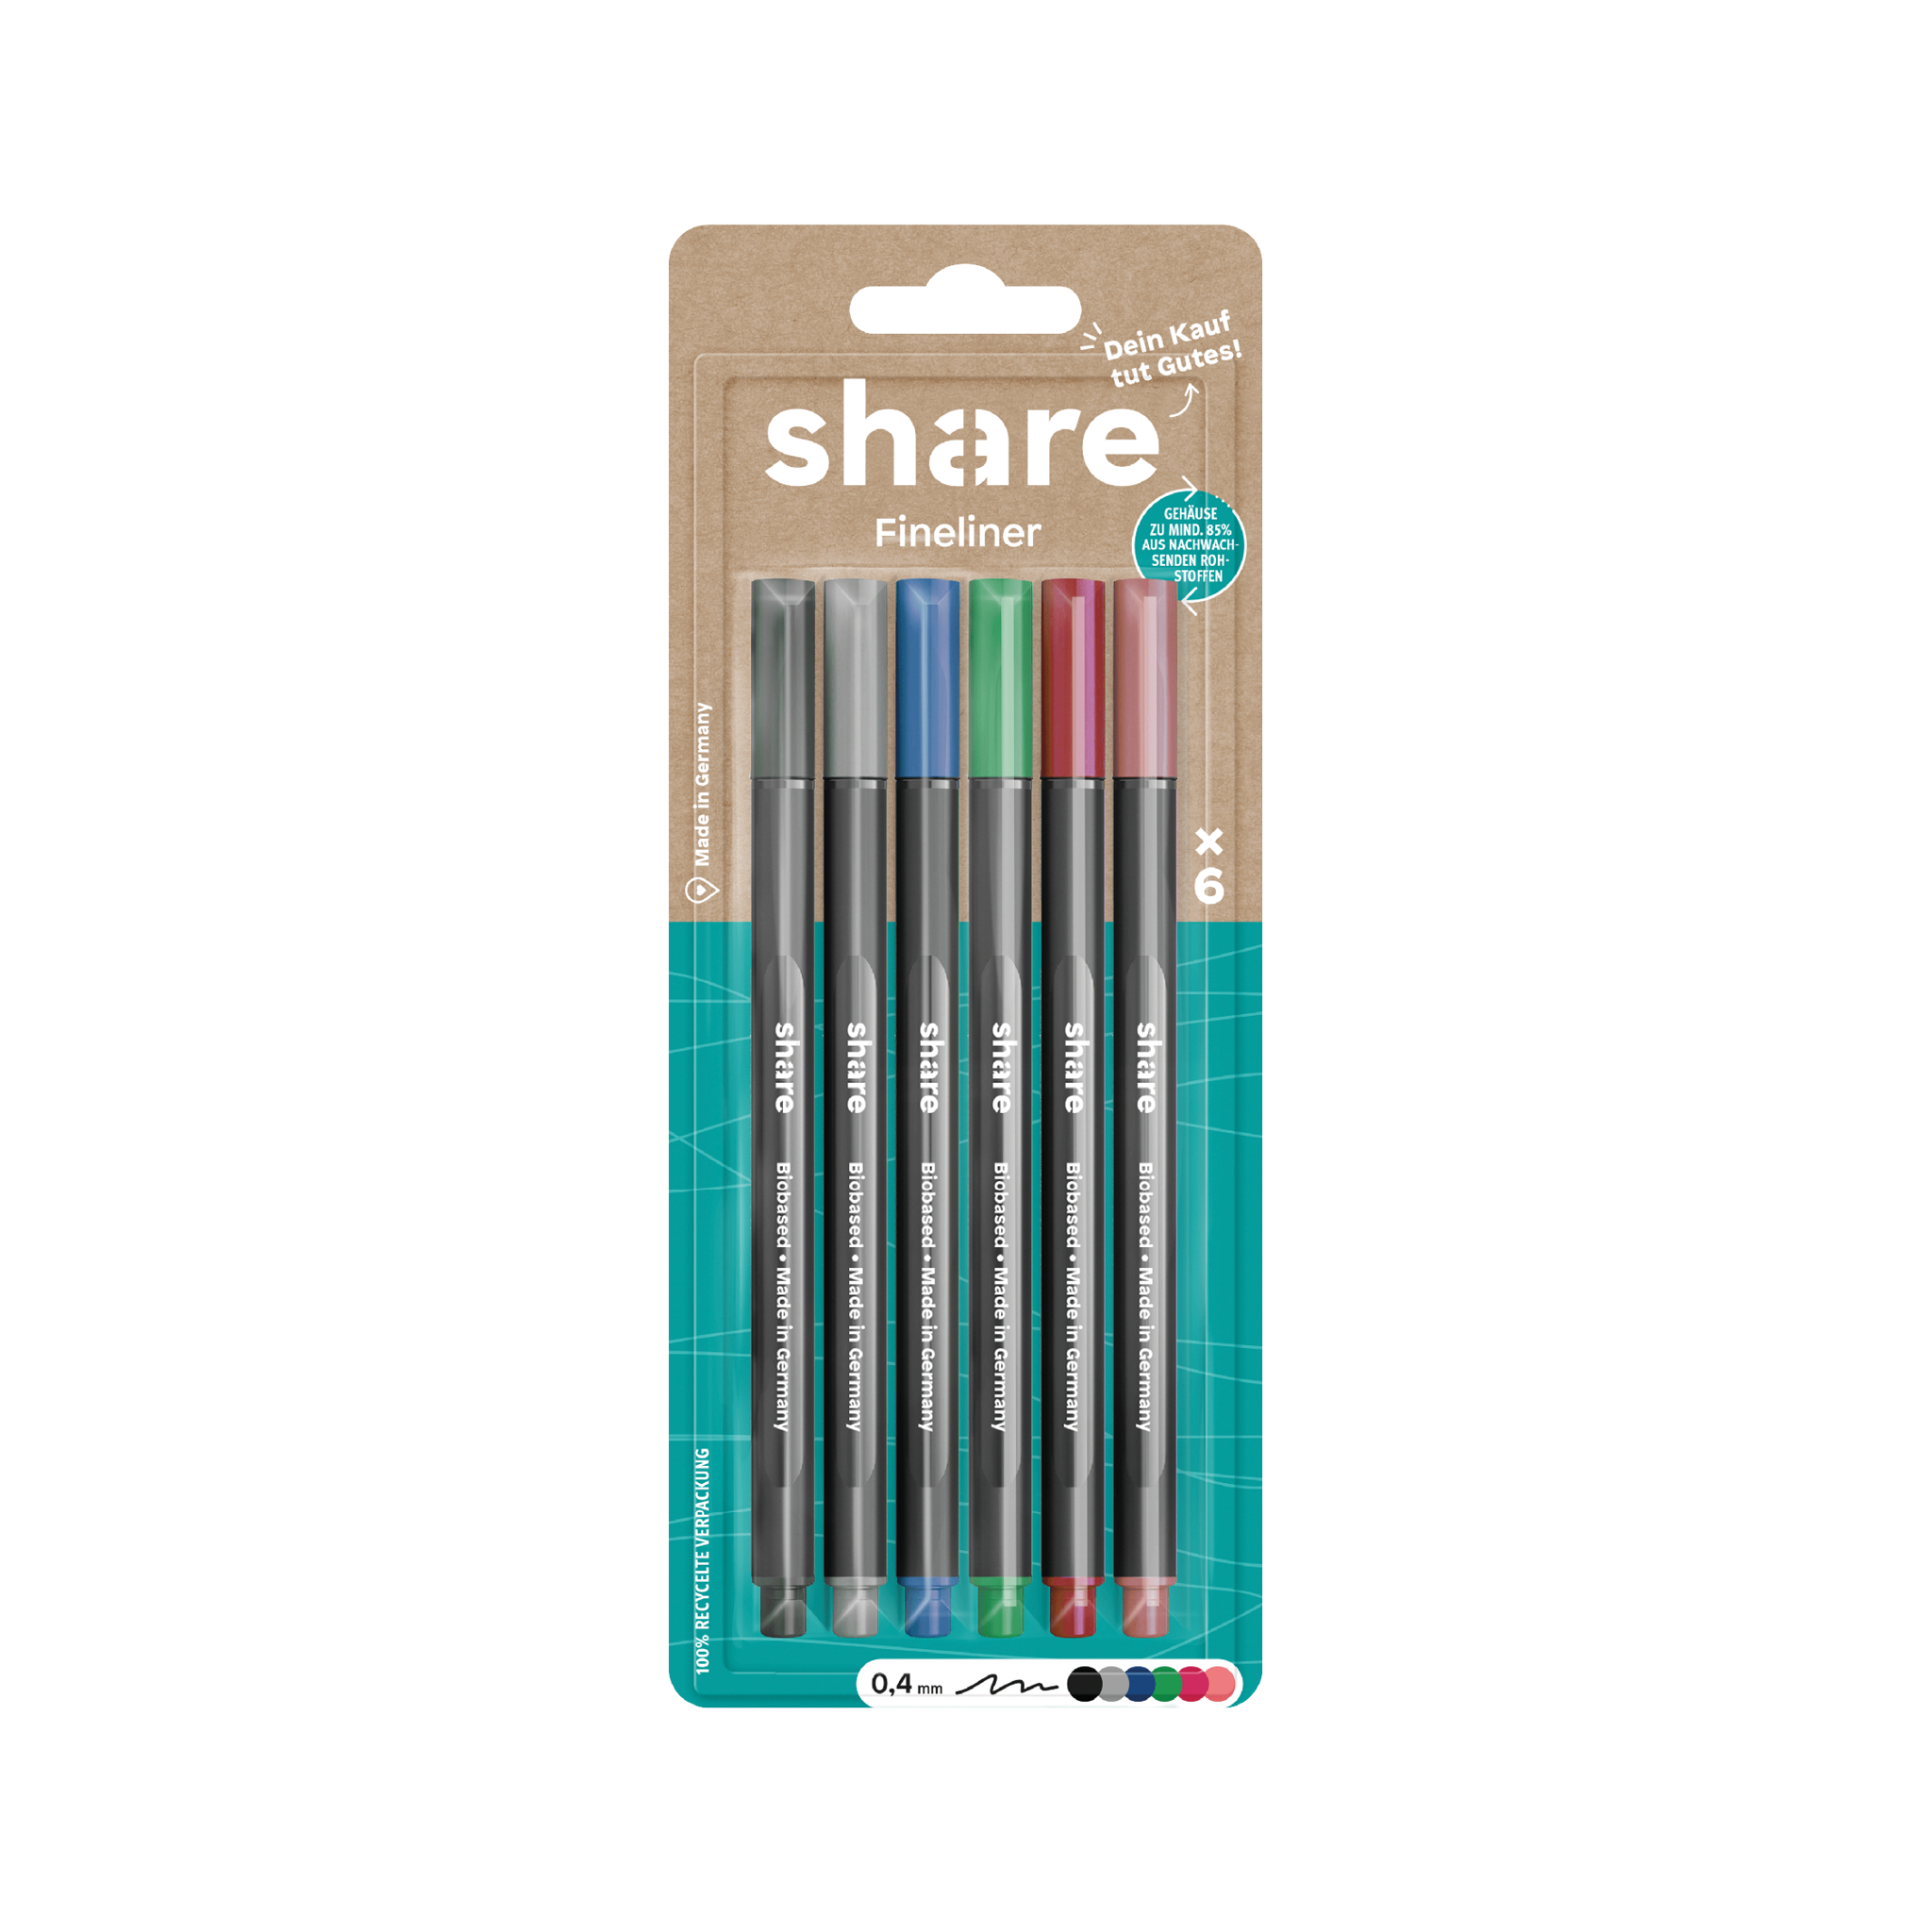 Eine Packung mit sechs Share-Fineliner-Stiften in verschiedenen Farben mit einer 0,4-mm-Spitze, präsentiert in einer umweltfreundlichen Verpackung.